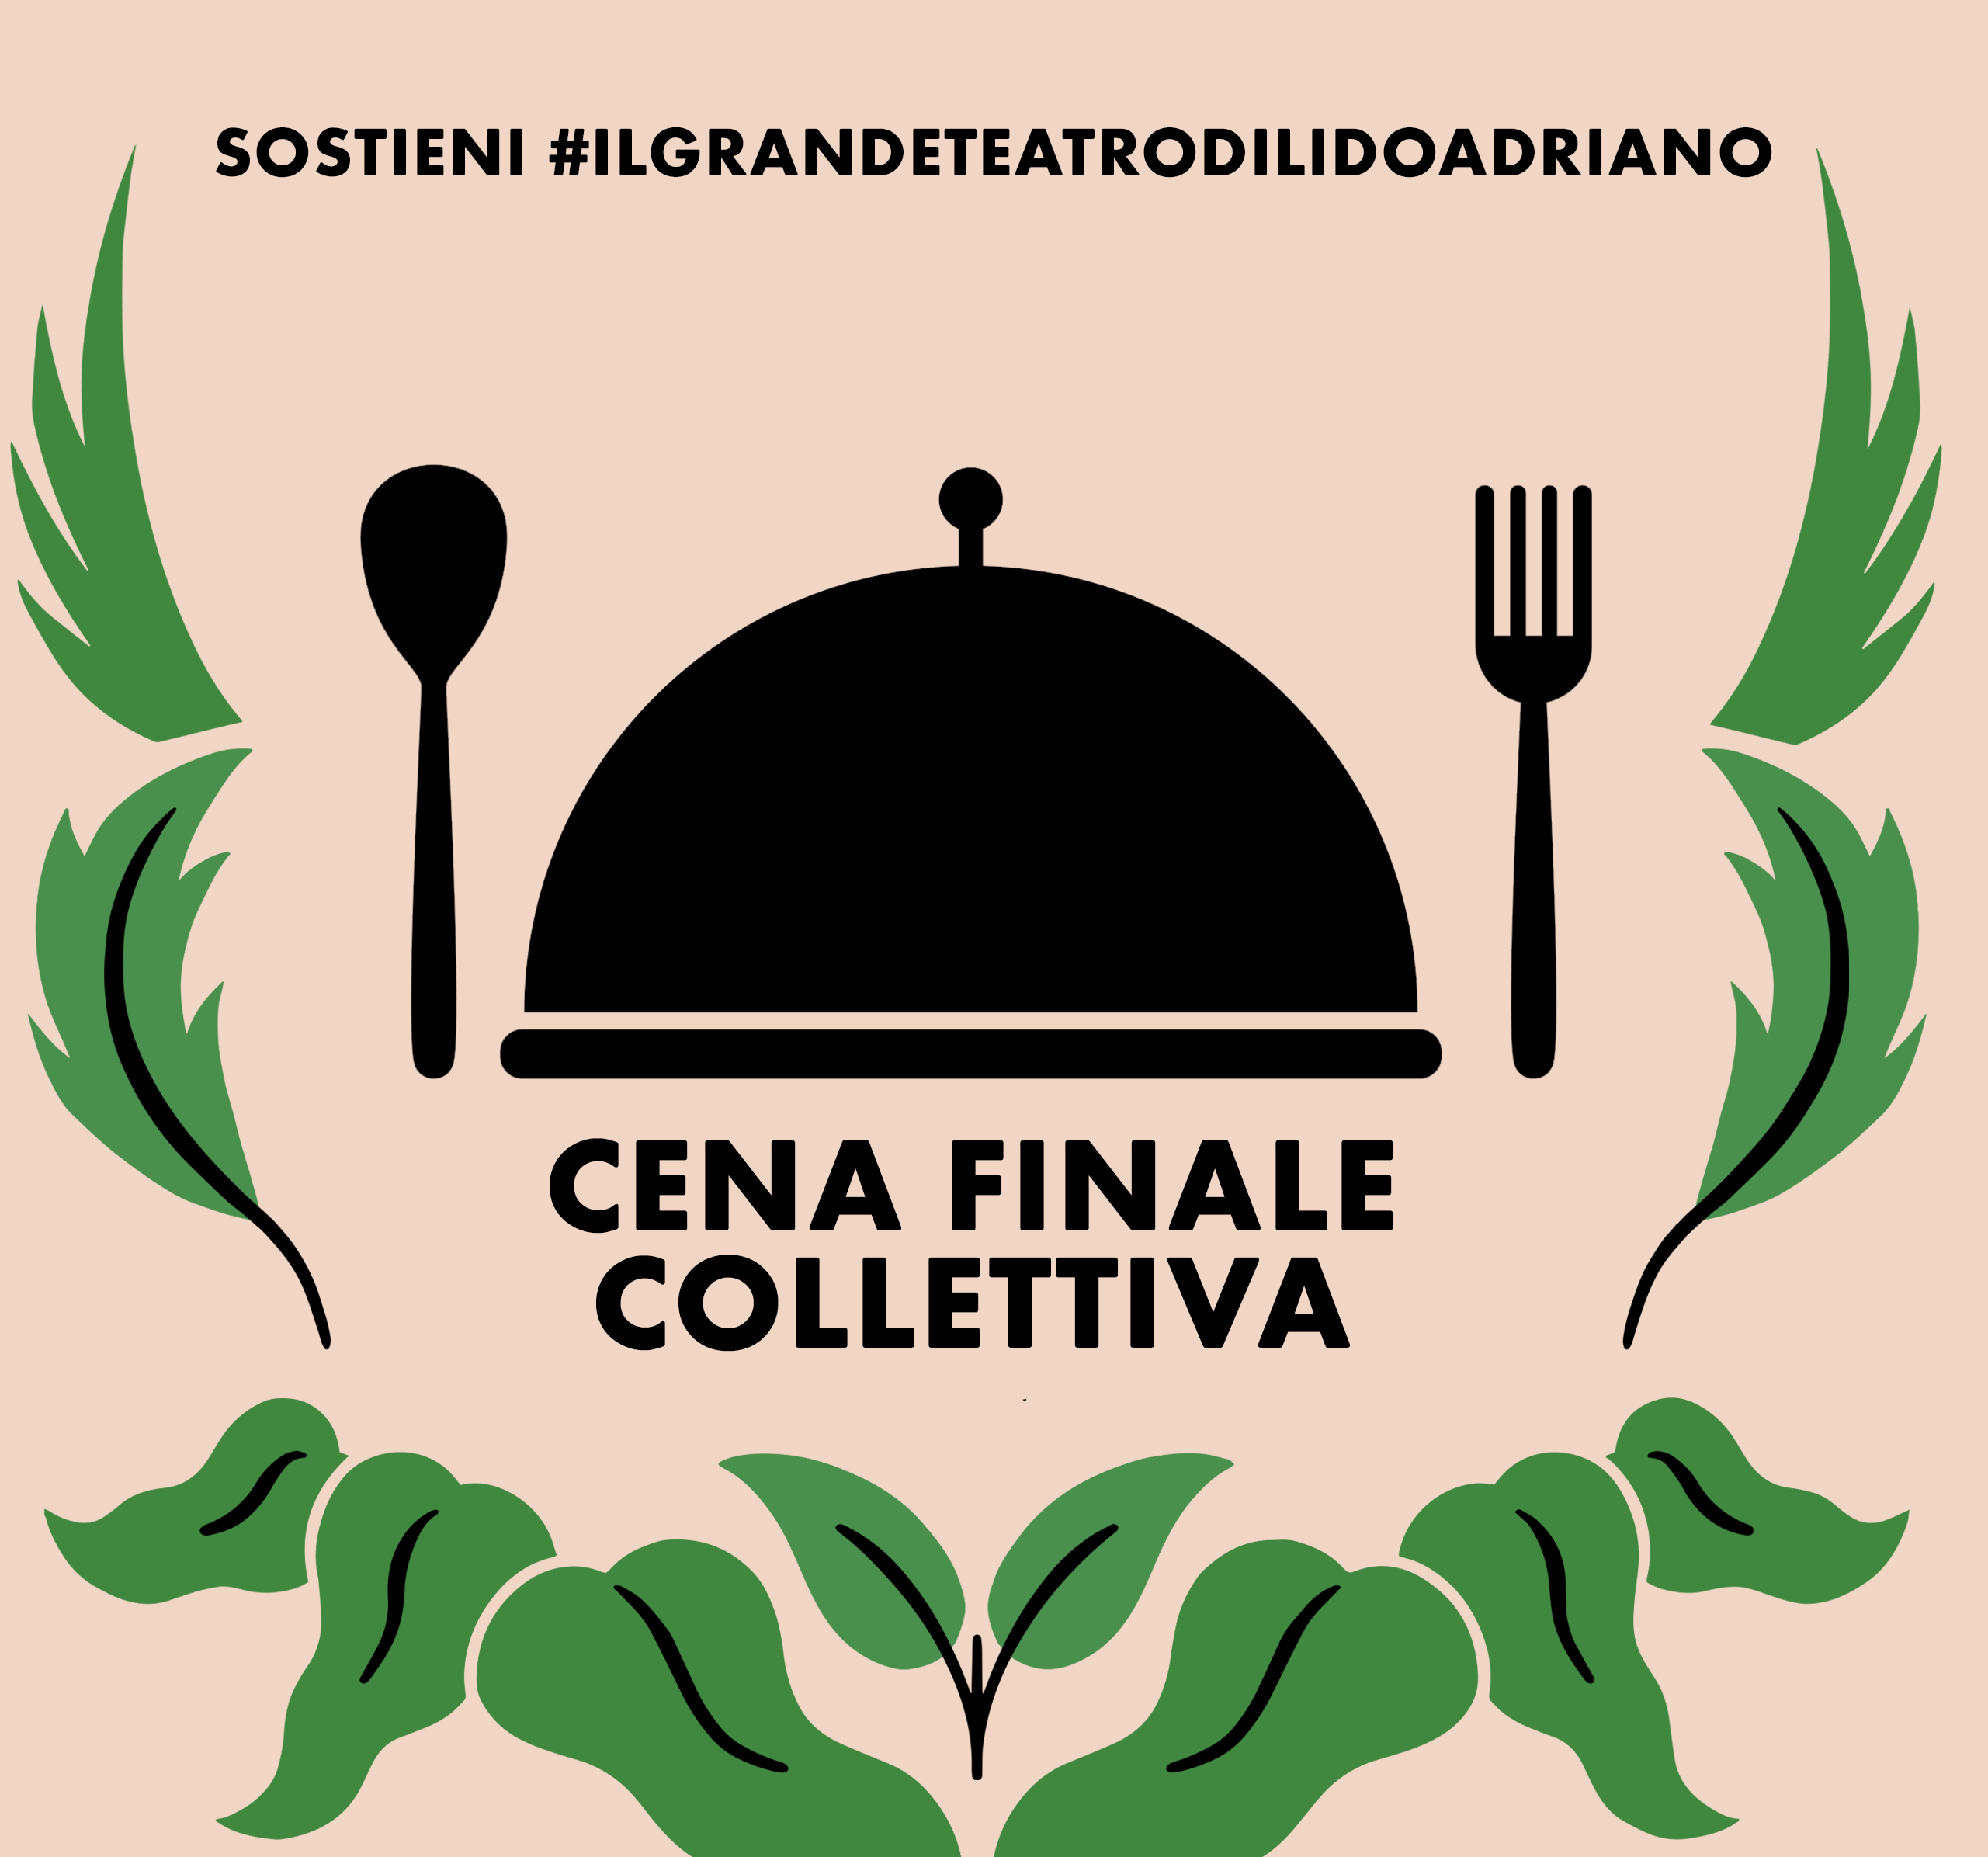 Donazione Sostieni #IlGrandeTeatroDiLidoAdriano + Cena finale collettiva